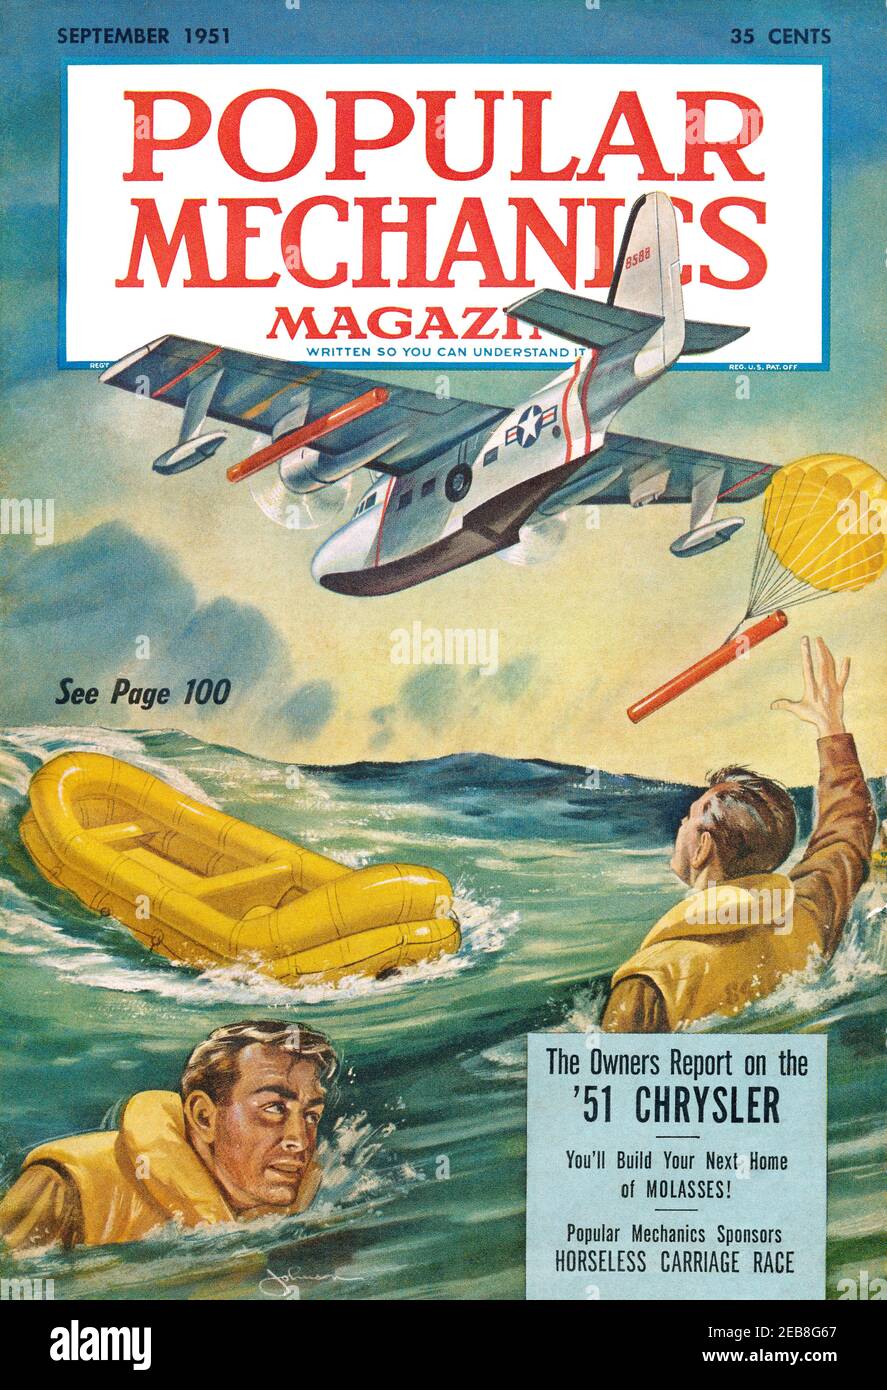 Vintage-Frontcover der Zeitschrift Popular Mechanics für September 1951, mit einer Luft-See-Rettung Illustration. Stockfoto